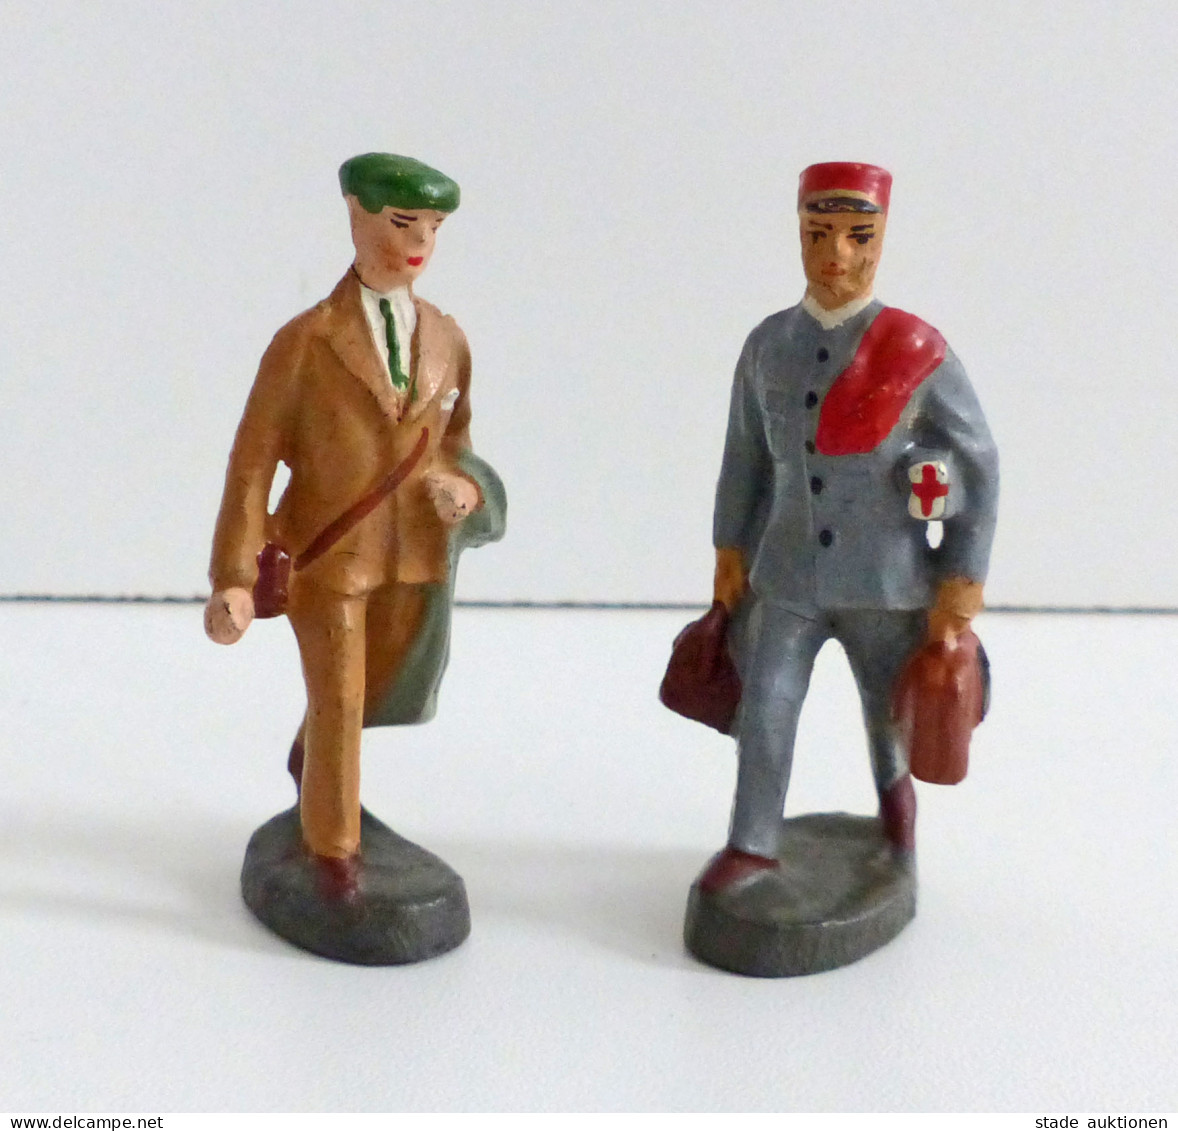 Spielzeug Elastolin 2 Figuren Sanitäter Und Tourist Aus Den 1930er Jahren Ca. 6cm Hoch I-II Jouet - Juegos Y Juguetes